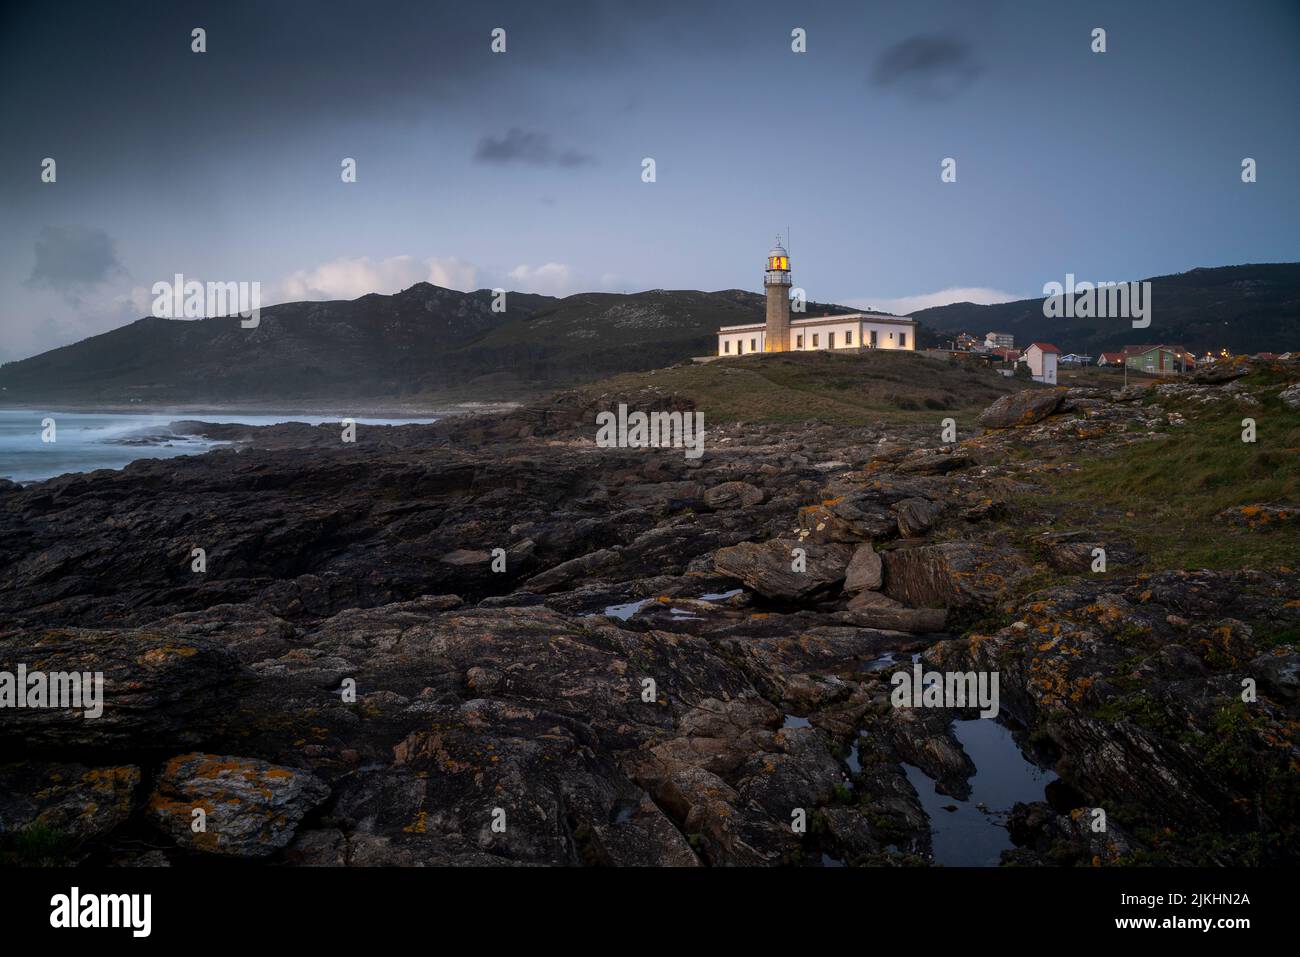 Uno scatto orizzontale di un faro in Galizia dietro un paesaggio roccioso sotto un cielo cupo Foto Stock